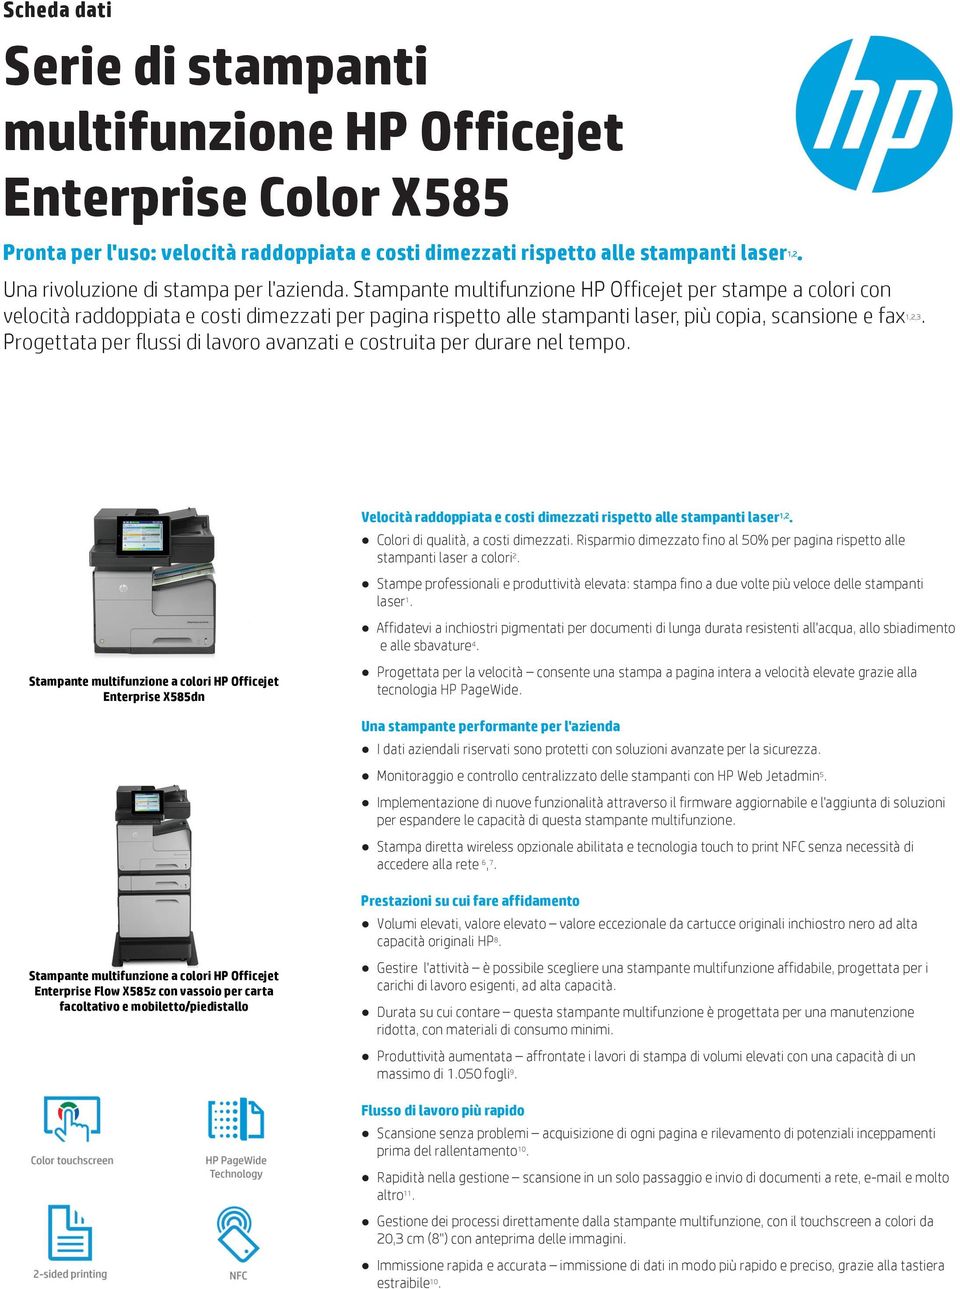 Stampante multifunzione HP Officejet per stampe a colori con velocità raddoppiata e costi dimezzati per pagina rispetto alle stampanti laser, più copia, scansione e fax 1,2,3.